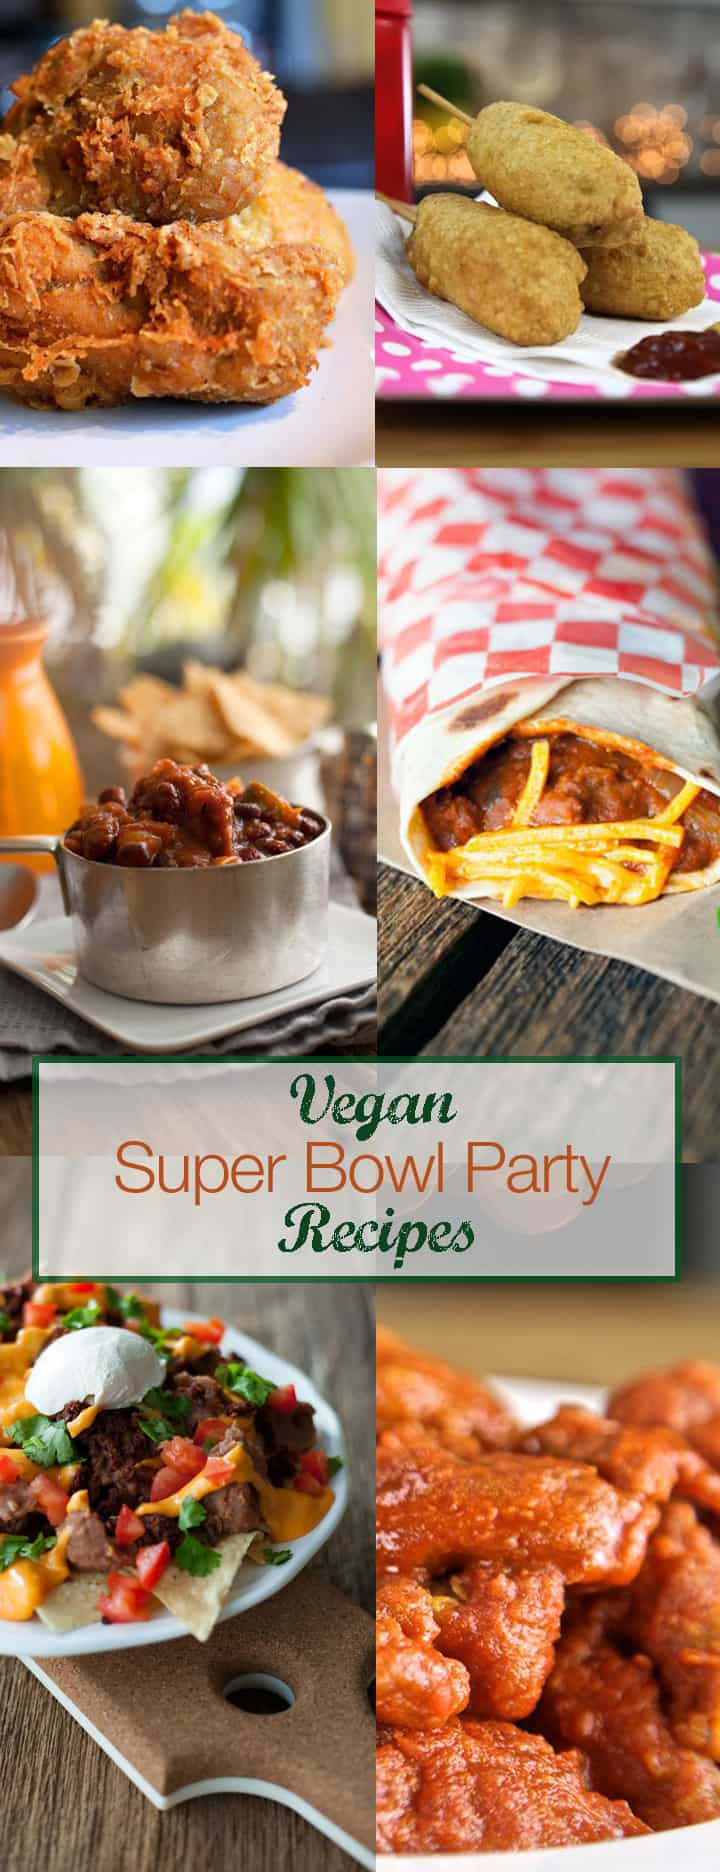 Super Bowl Vegetarian Recipes
 Easy Super Bowl Recipes VEGAN